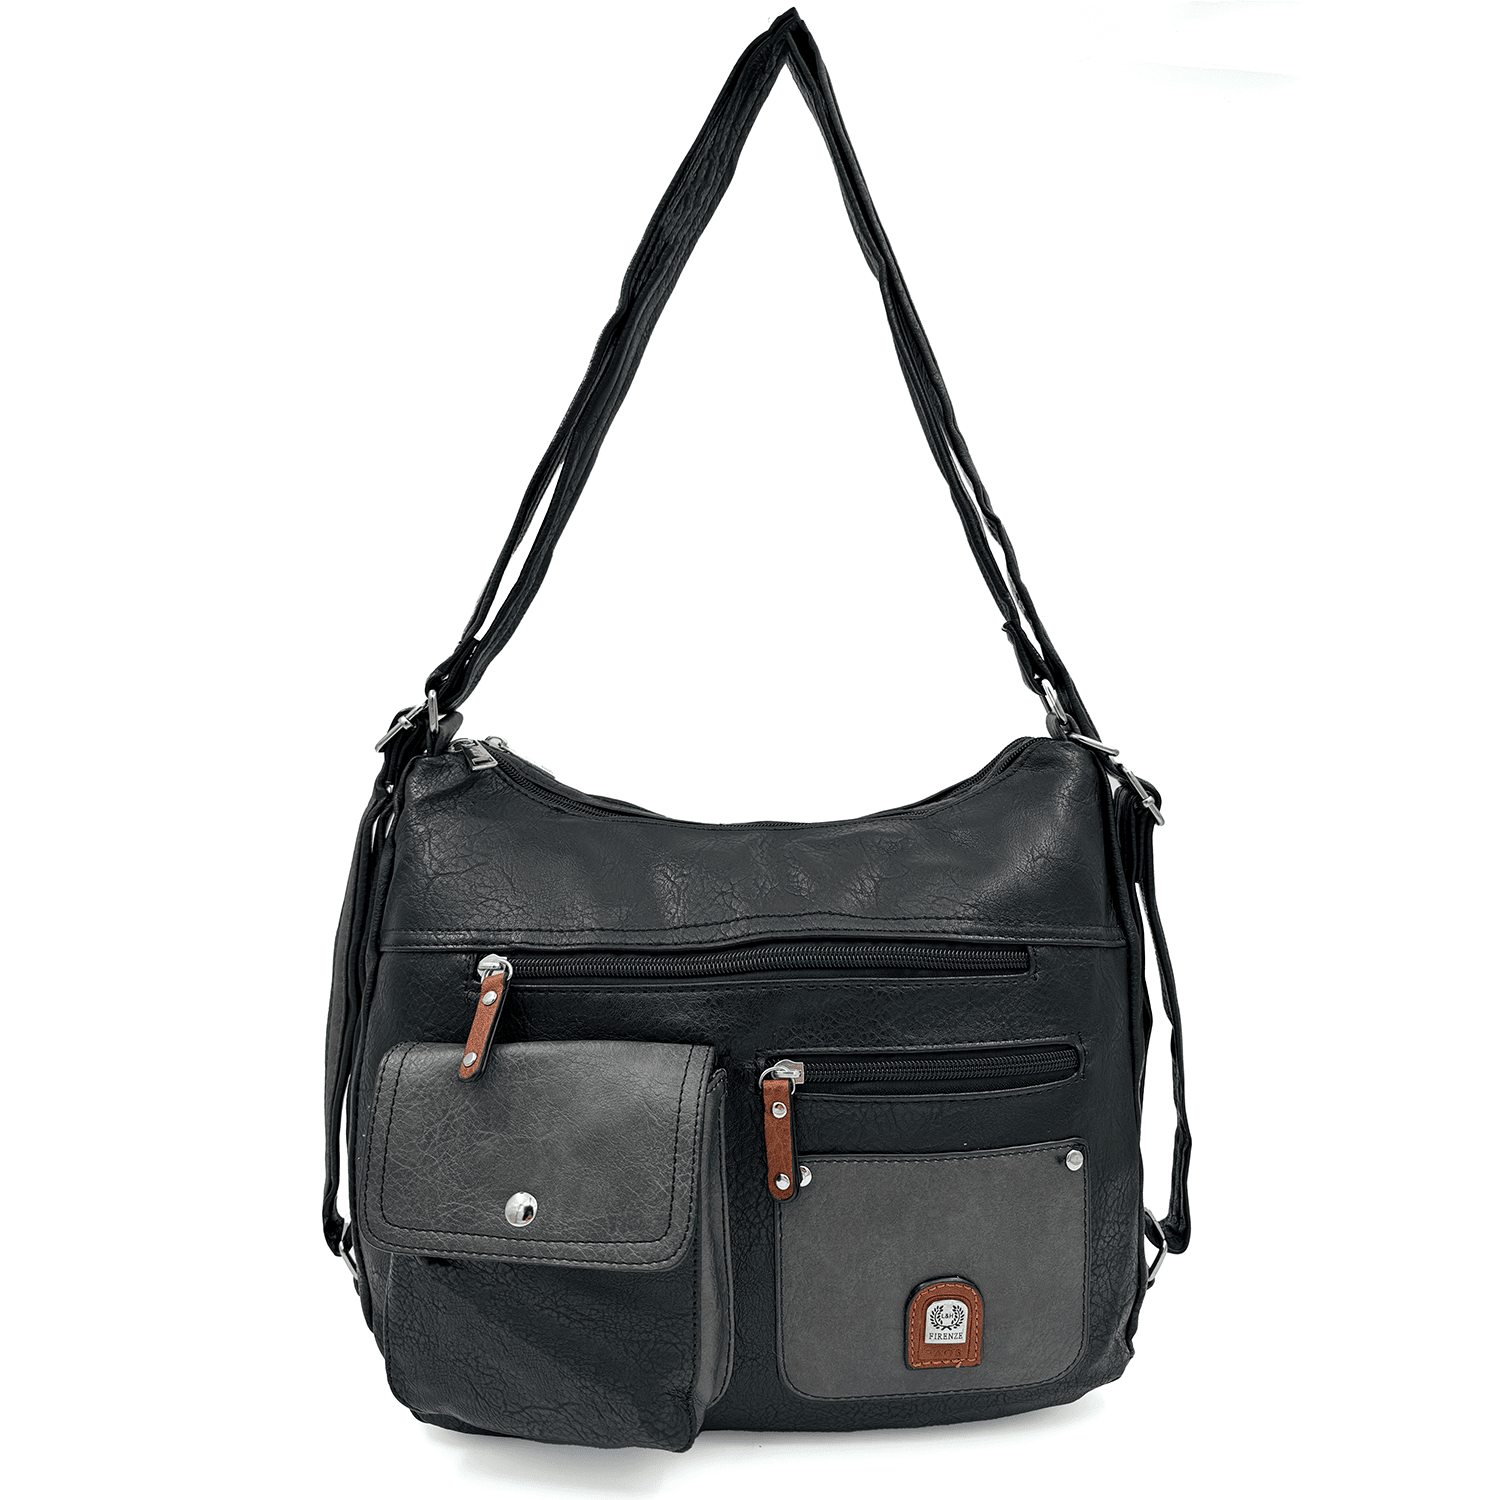 2 в 1 - Дамска чанта и раница с много джобове - черно/сиво